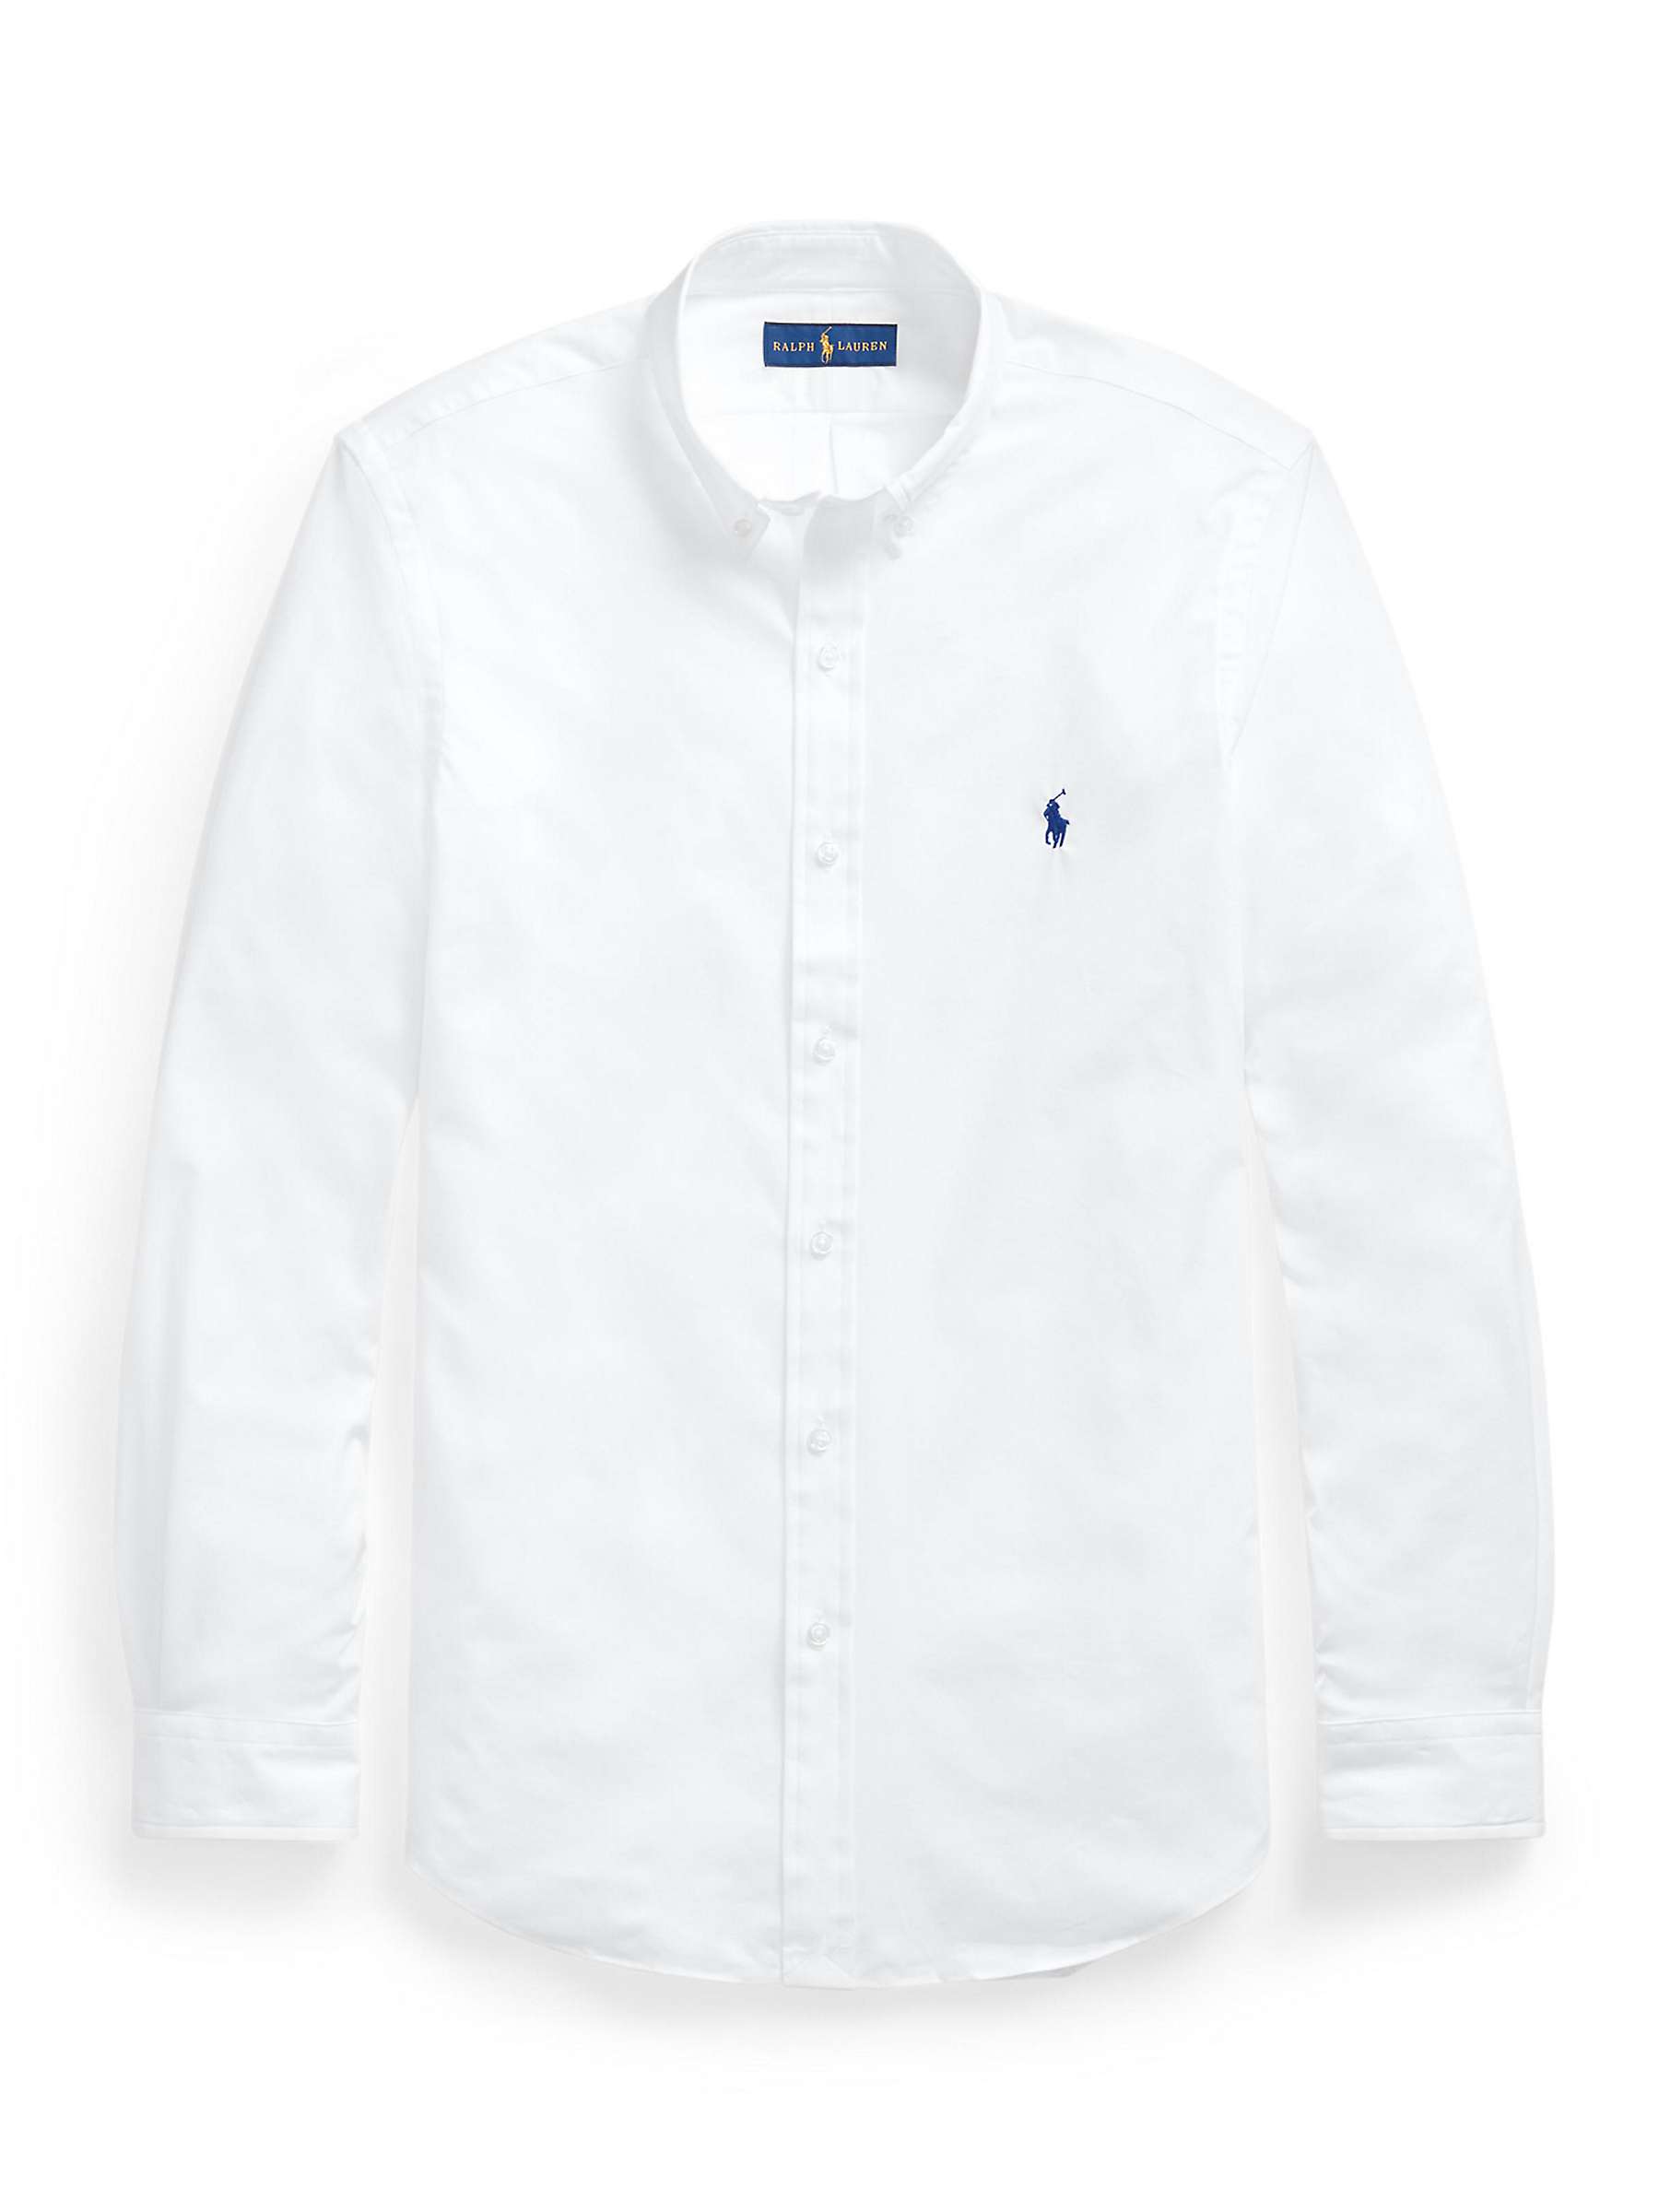 Buy Polo Ralph Lauren Poplin Slim Shirt, White Online at johnlewis.com